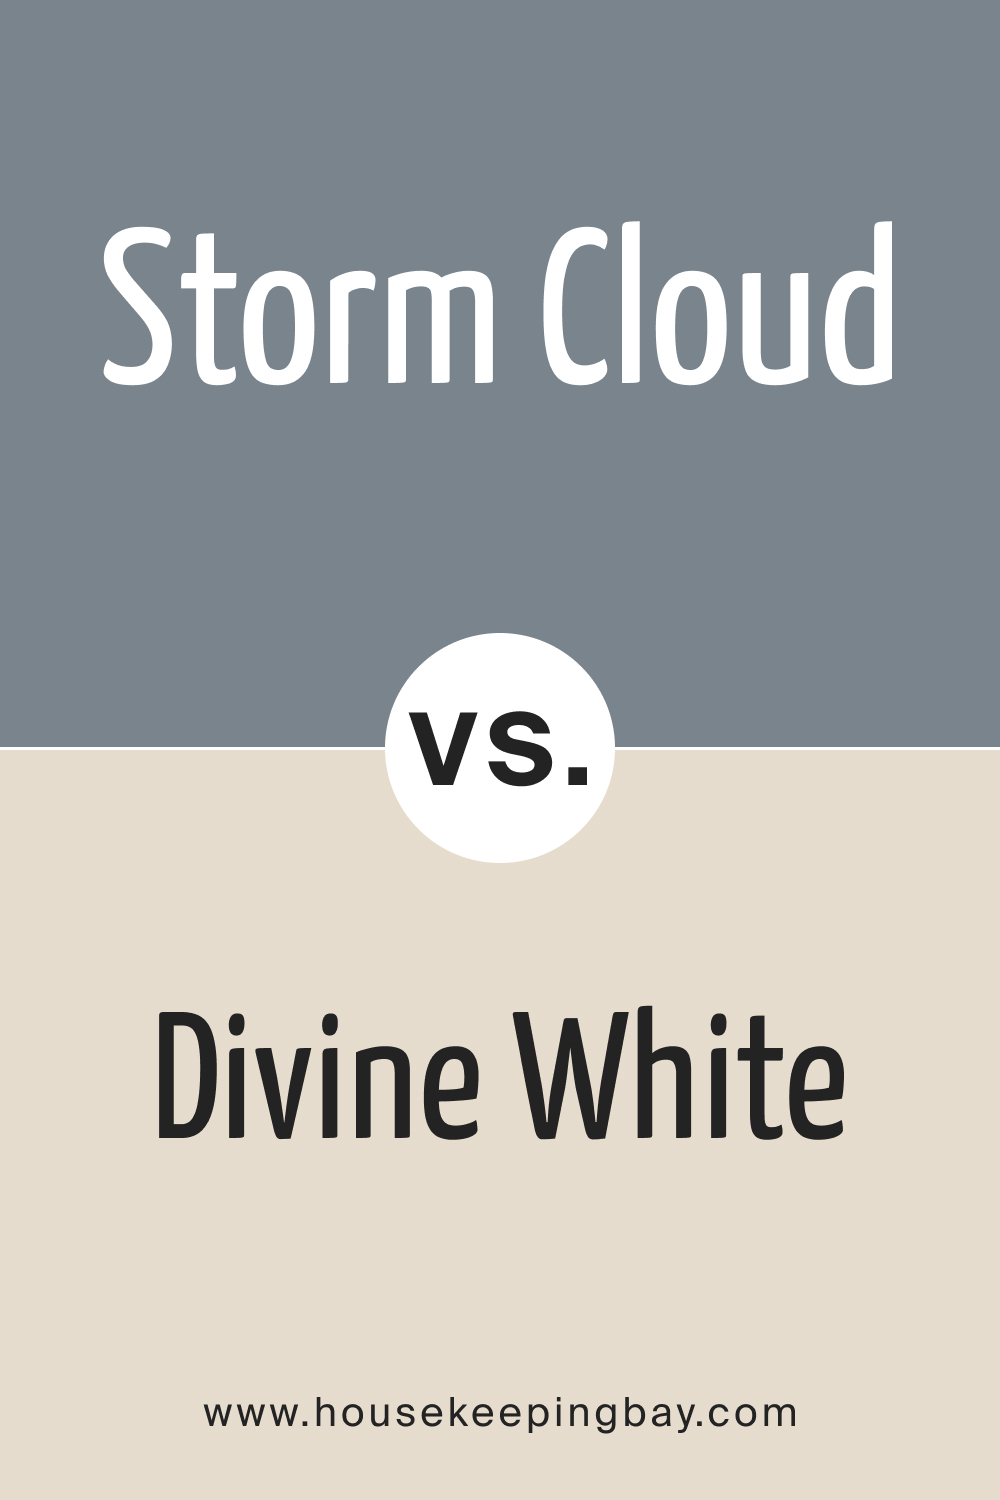 SW 6249 Storm Cloud vs. SW 6105 Divine White